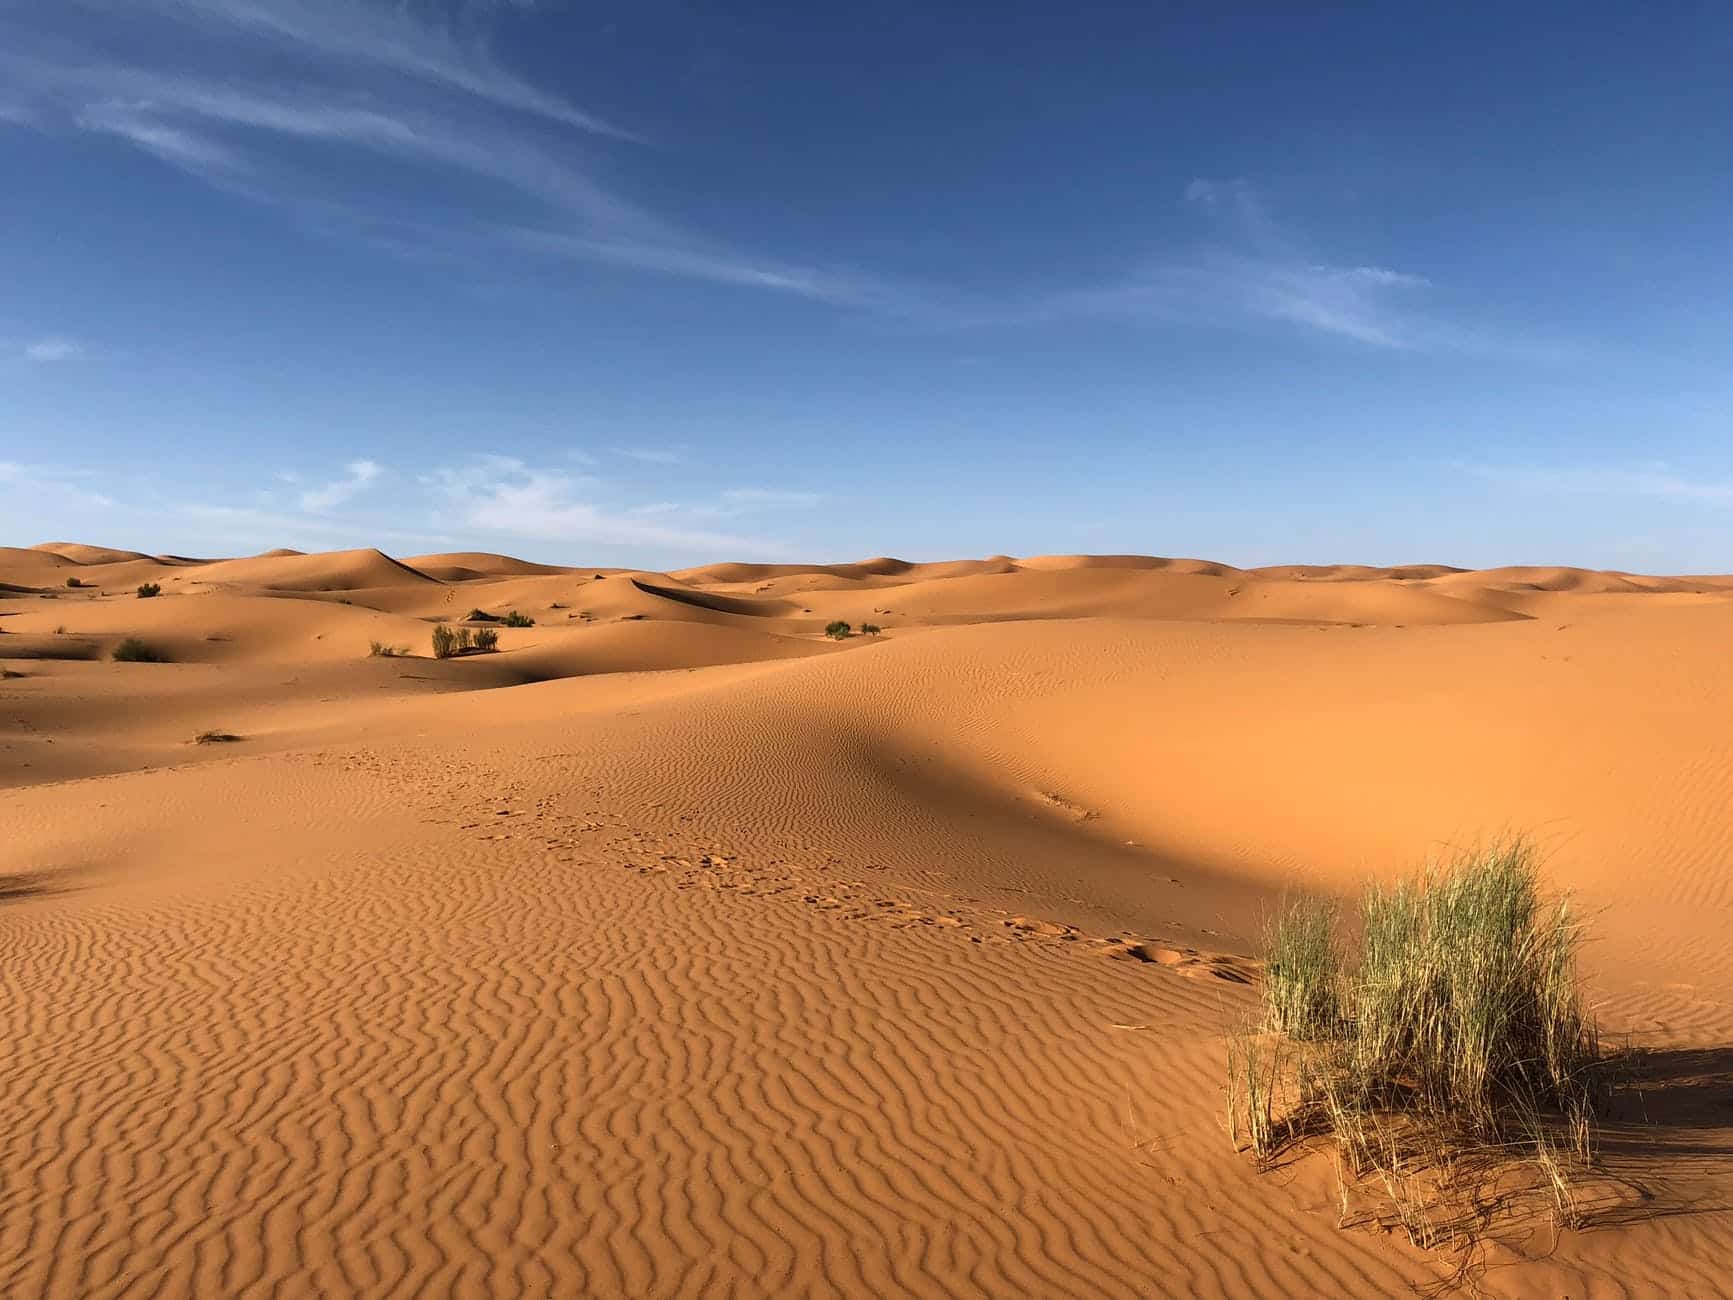 green grasses on sahara desertDie Sahara ist eine der berühmtesten Wüsten der Welt